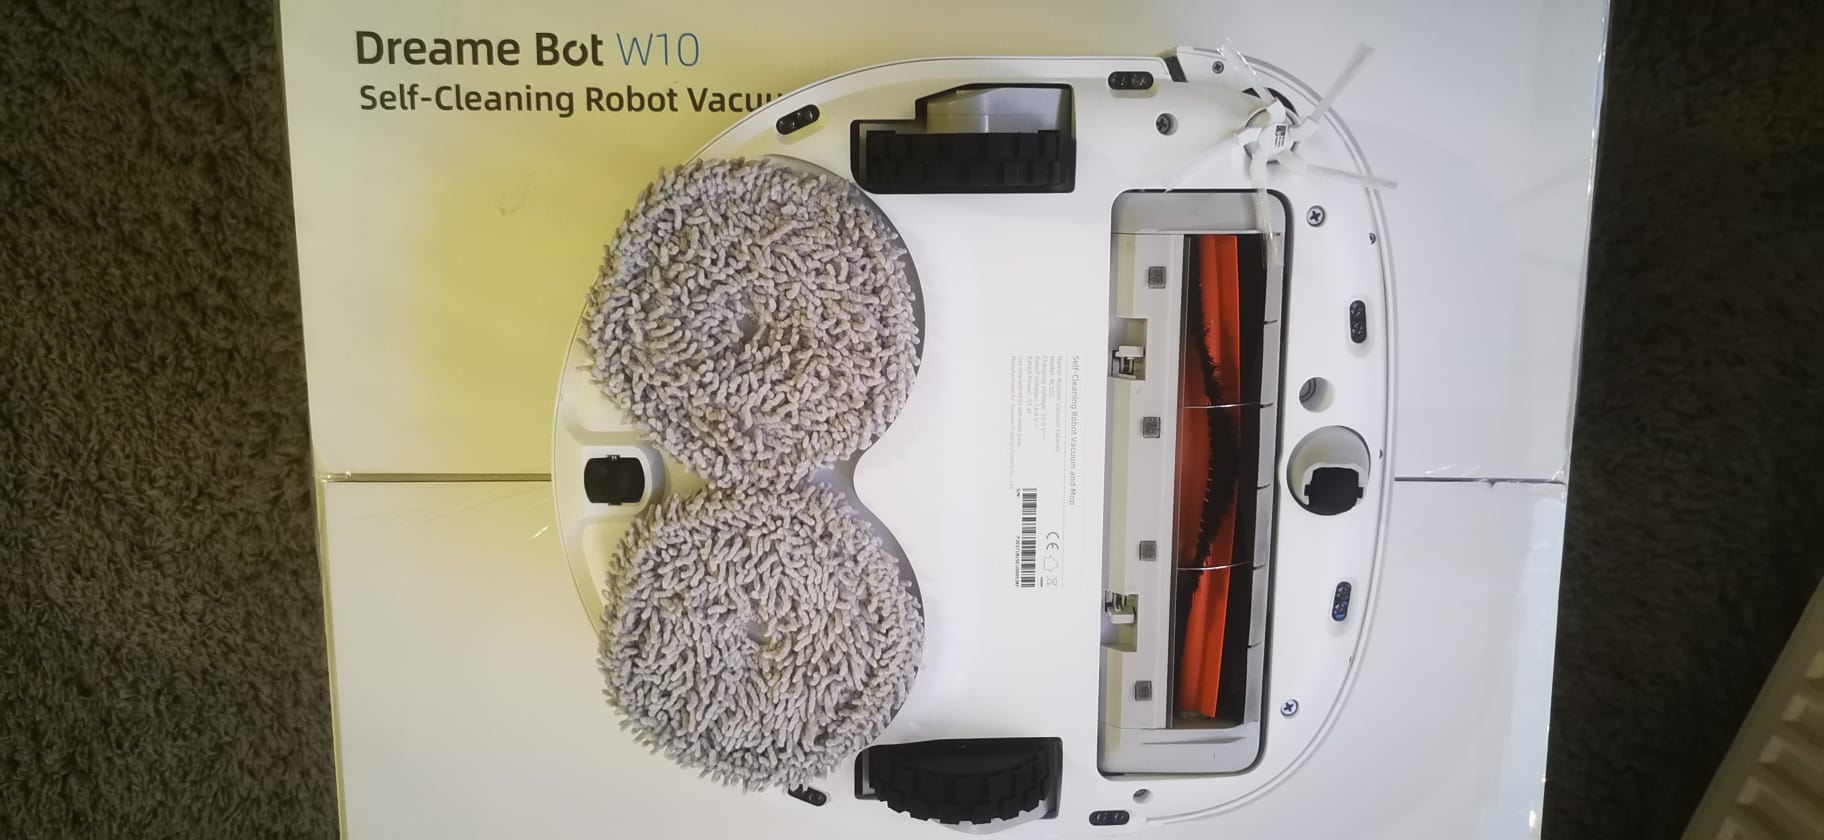  Selbstständig wischen, saugen und reinigen mit dem Dreame Bot W10